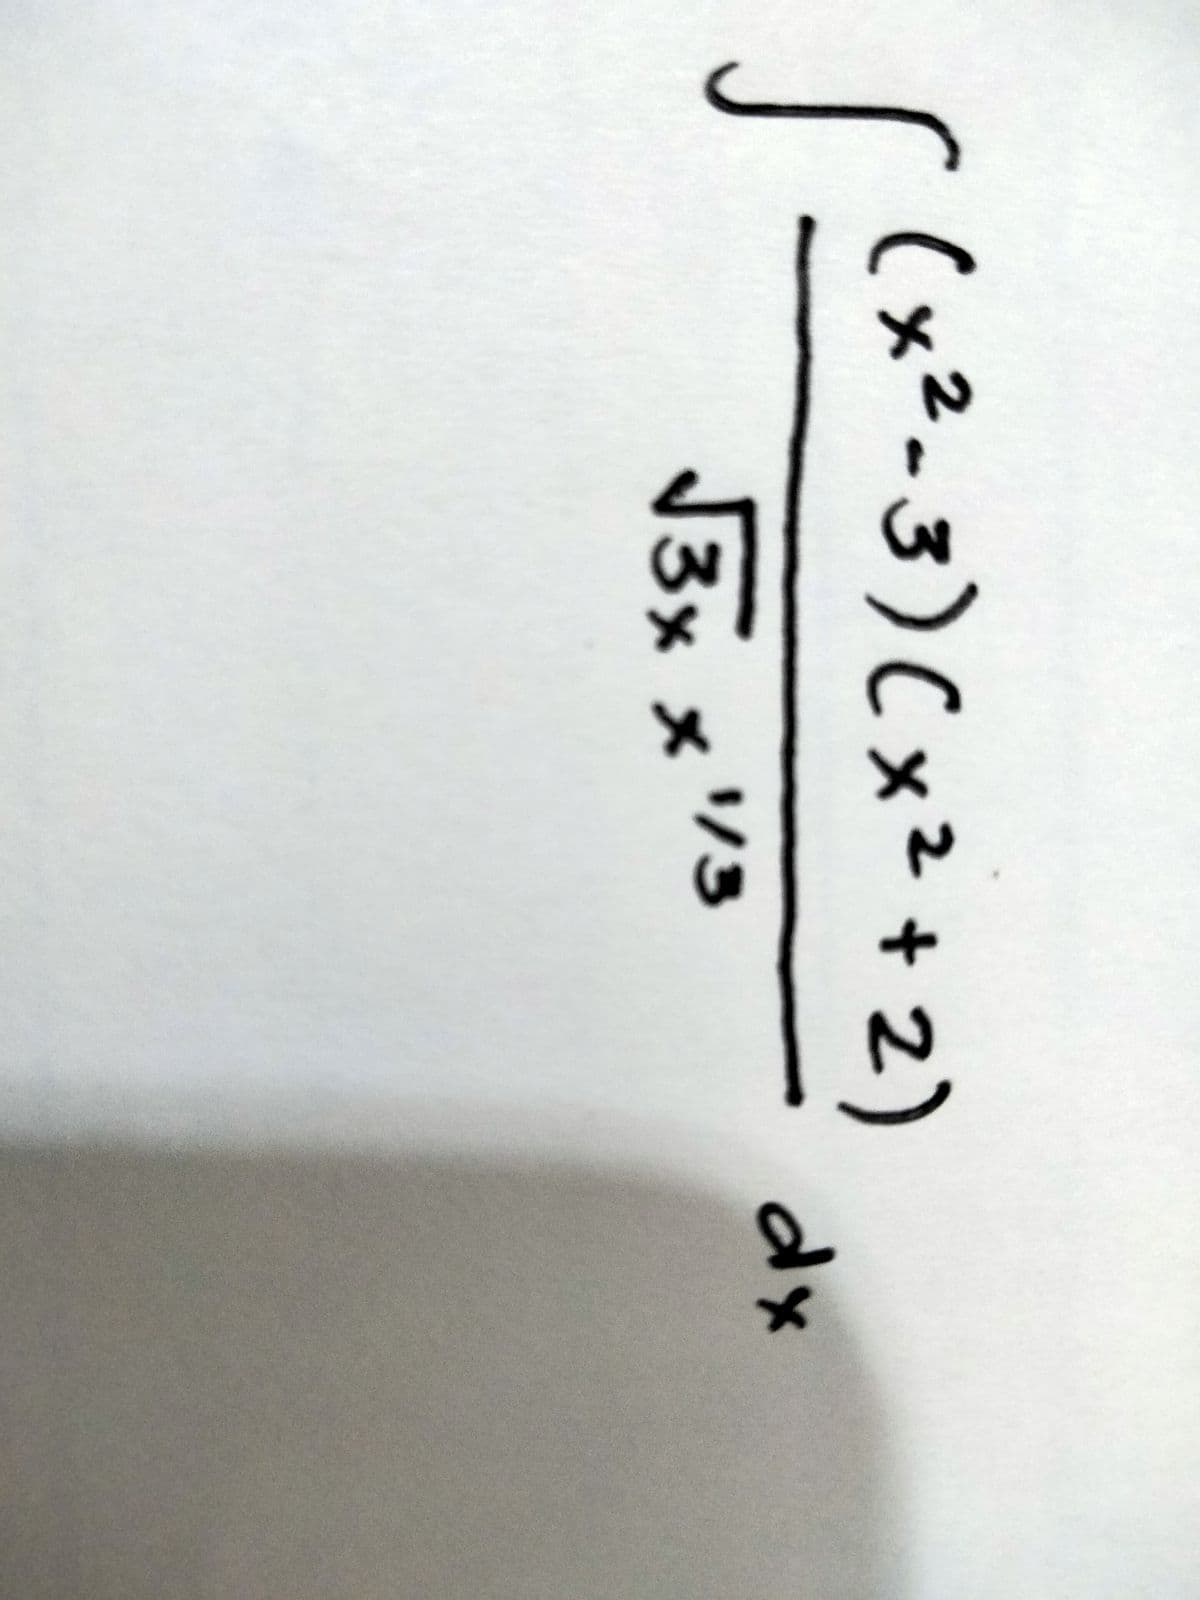 (x²-3)Cx²+ 2)
dx
113
J3x x3
